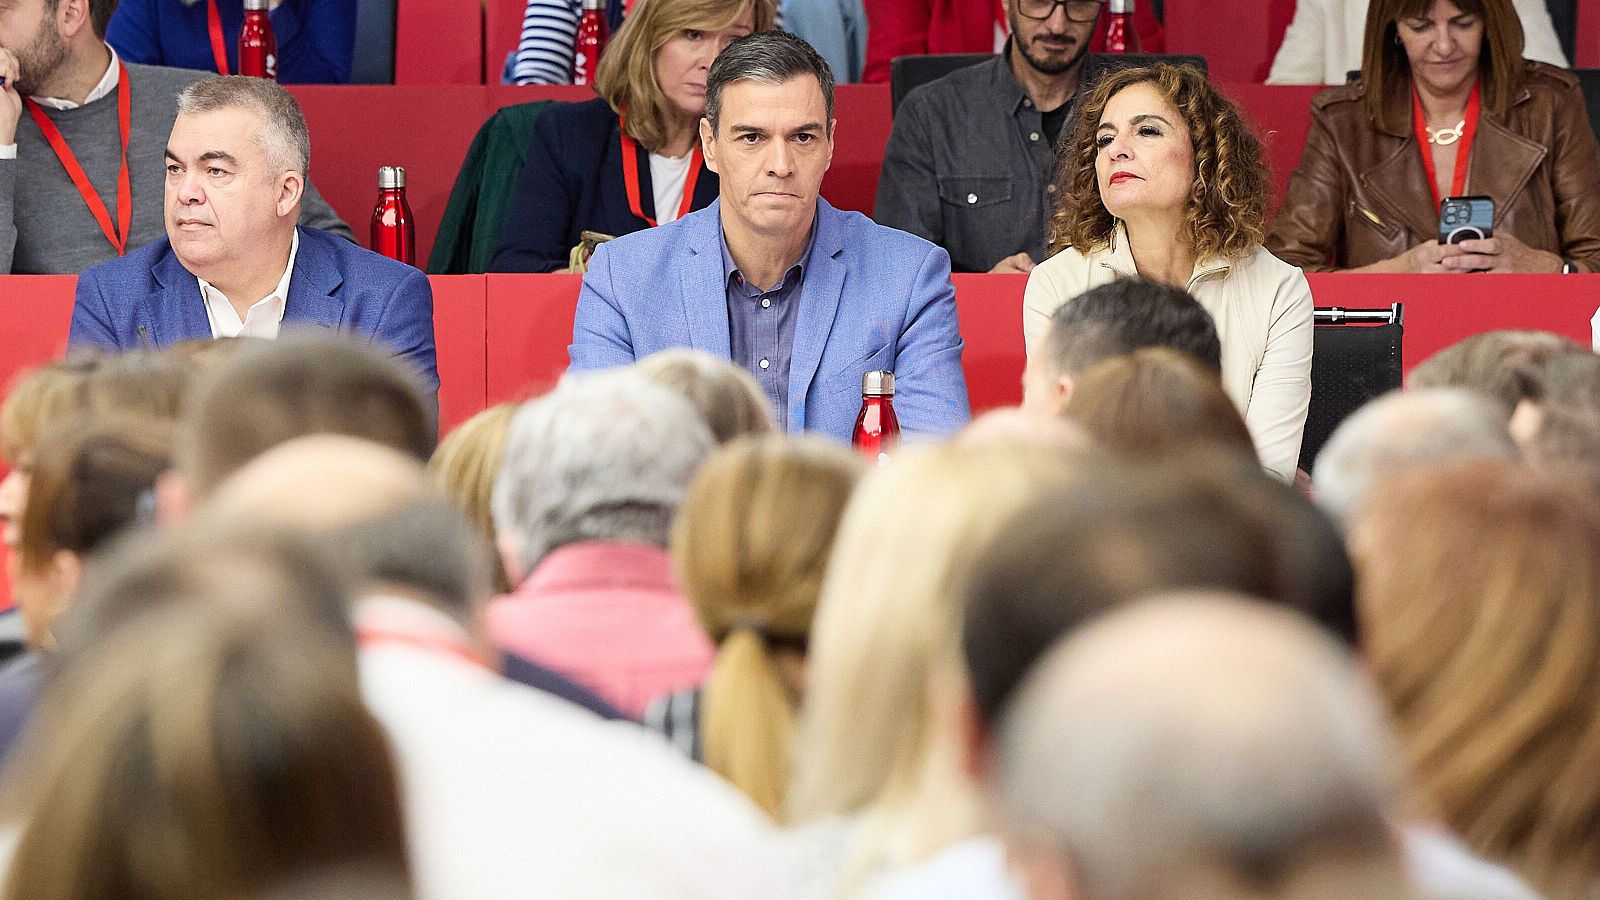 El PSOE prepara una movilización en Ferraz para retener a Sánchez como presidente